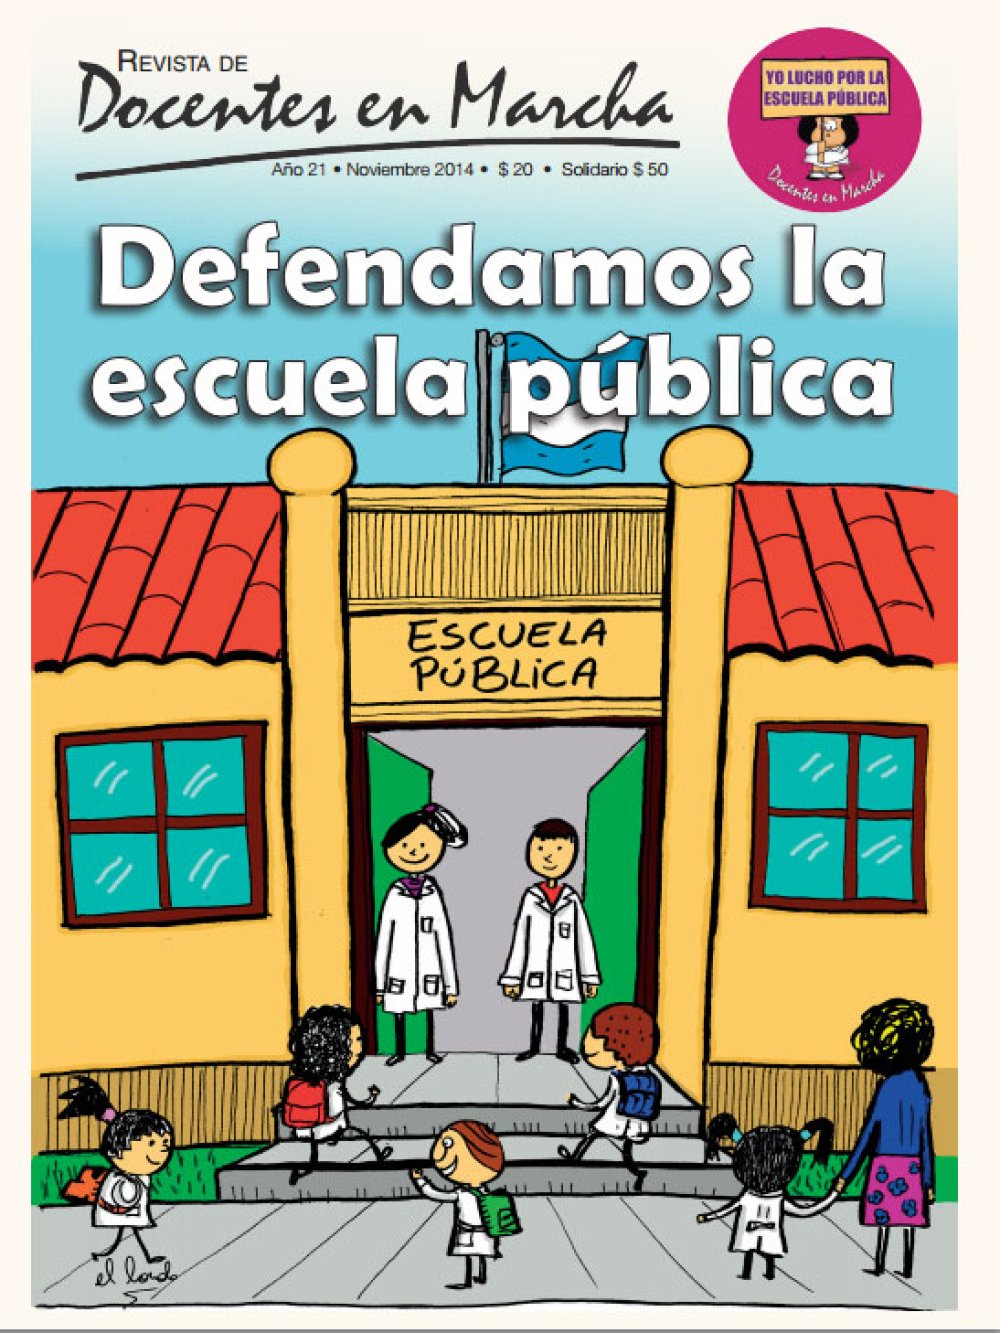 [2014] Defendamos la escuela pública - Revista de Docentes en Marcha